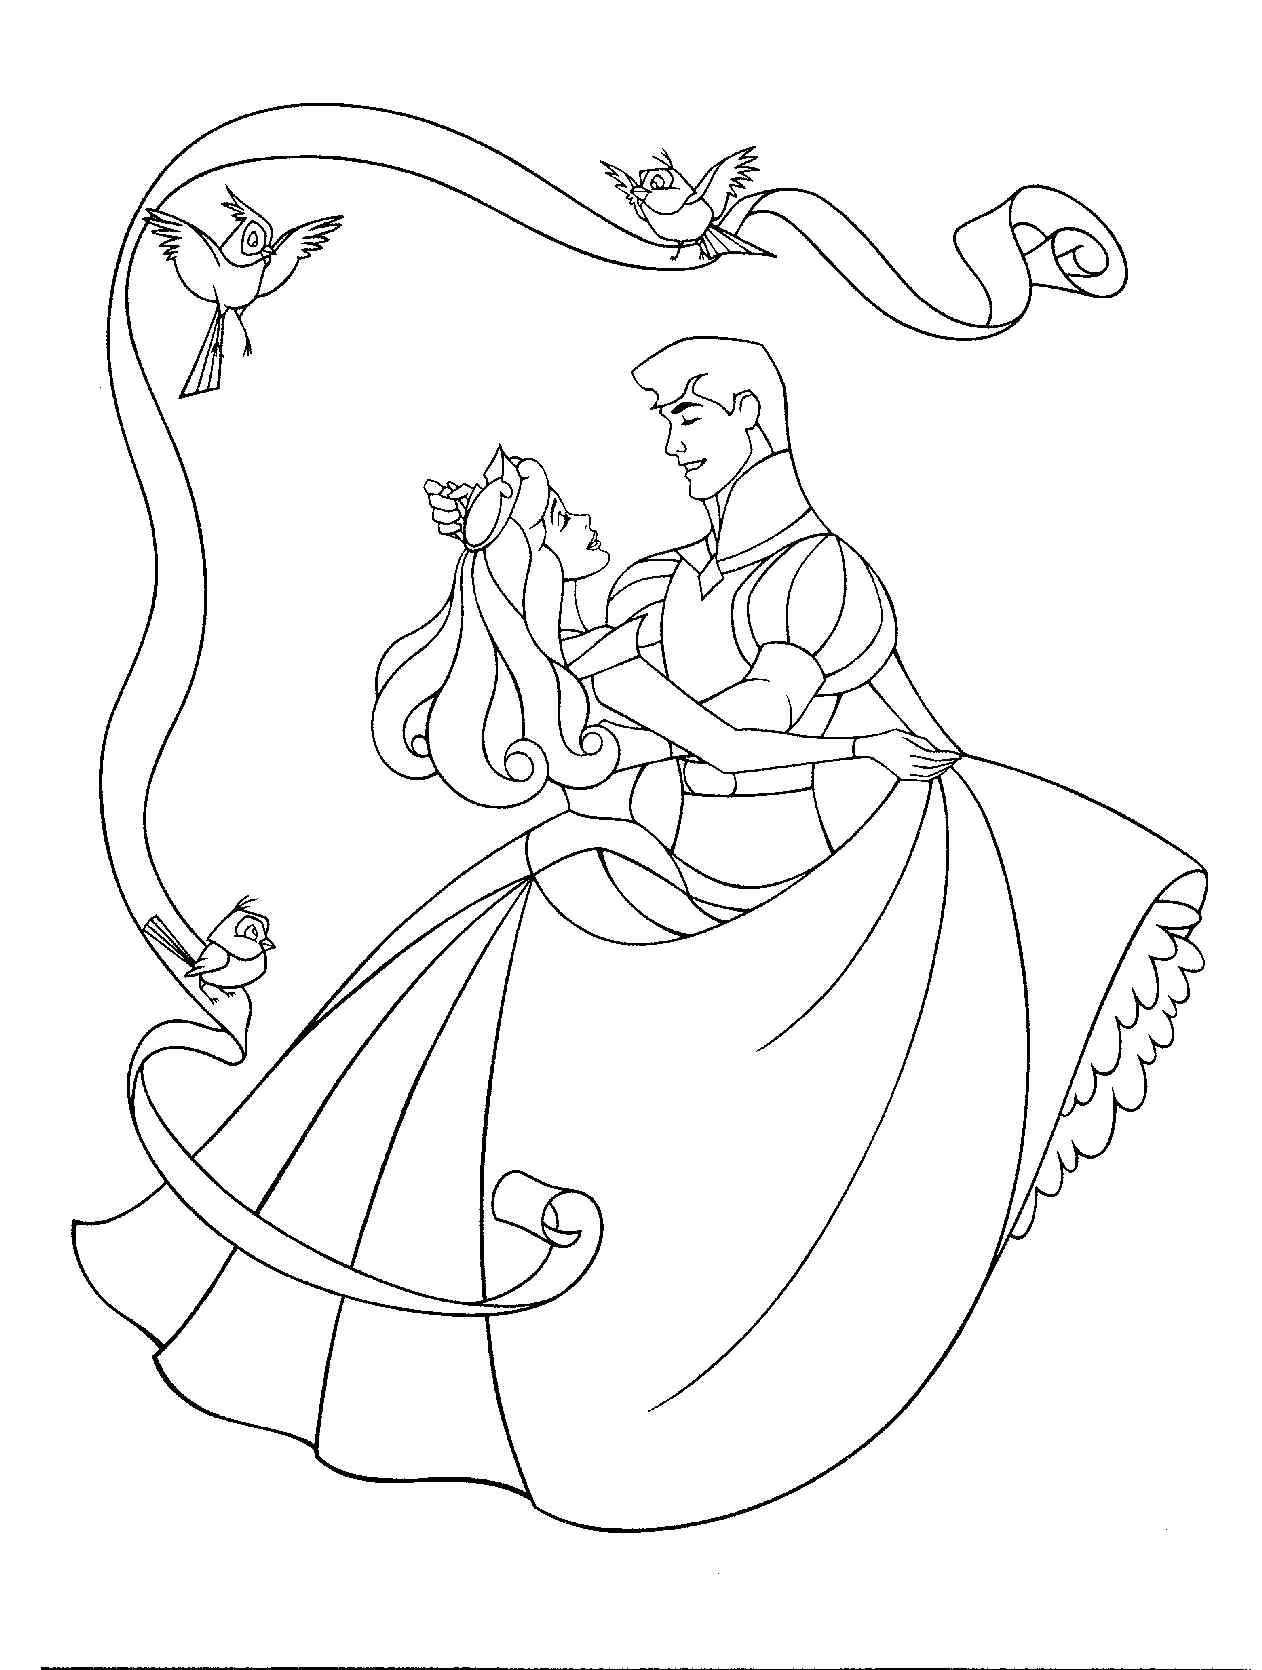 Принц танцует с красавицей